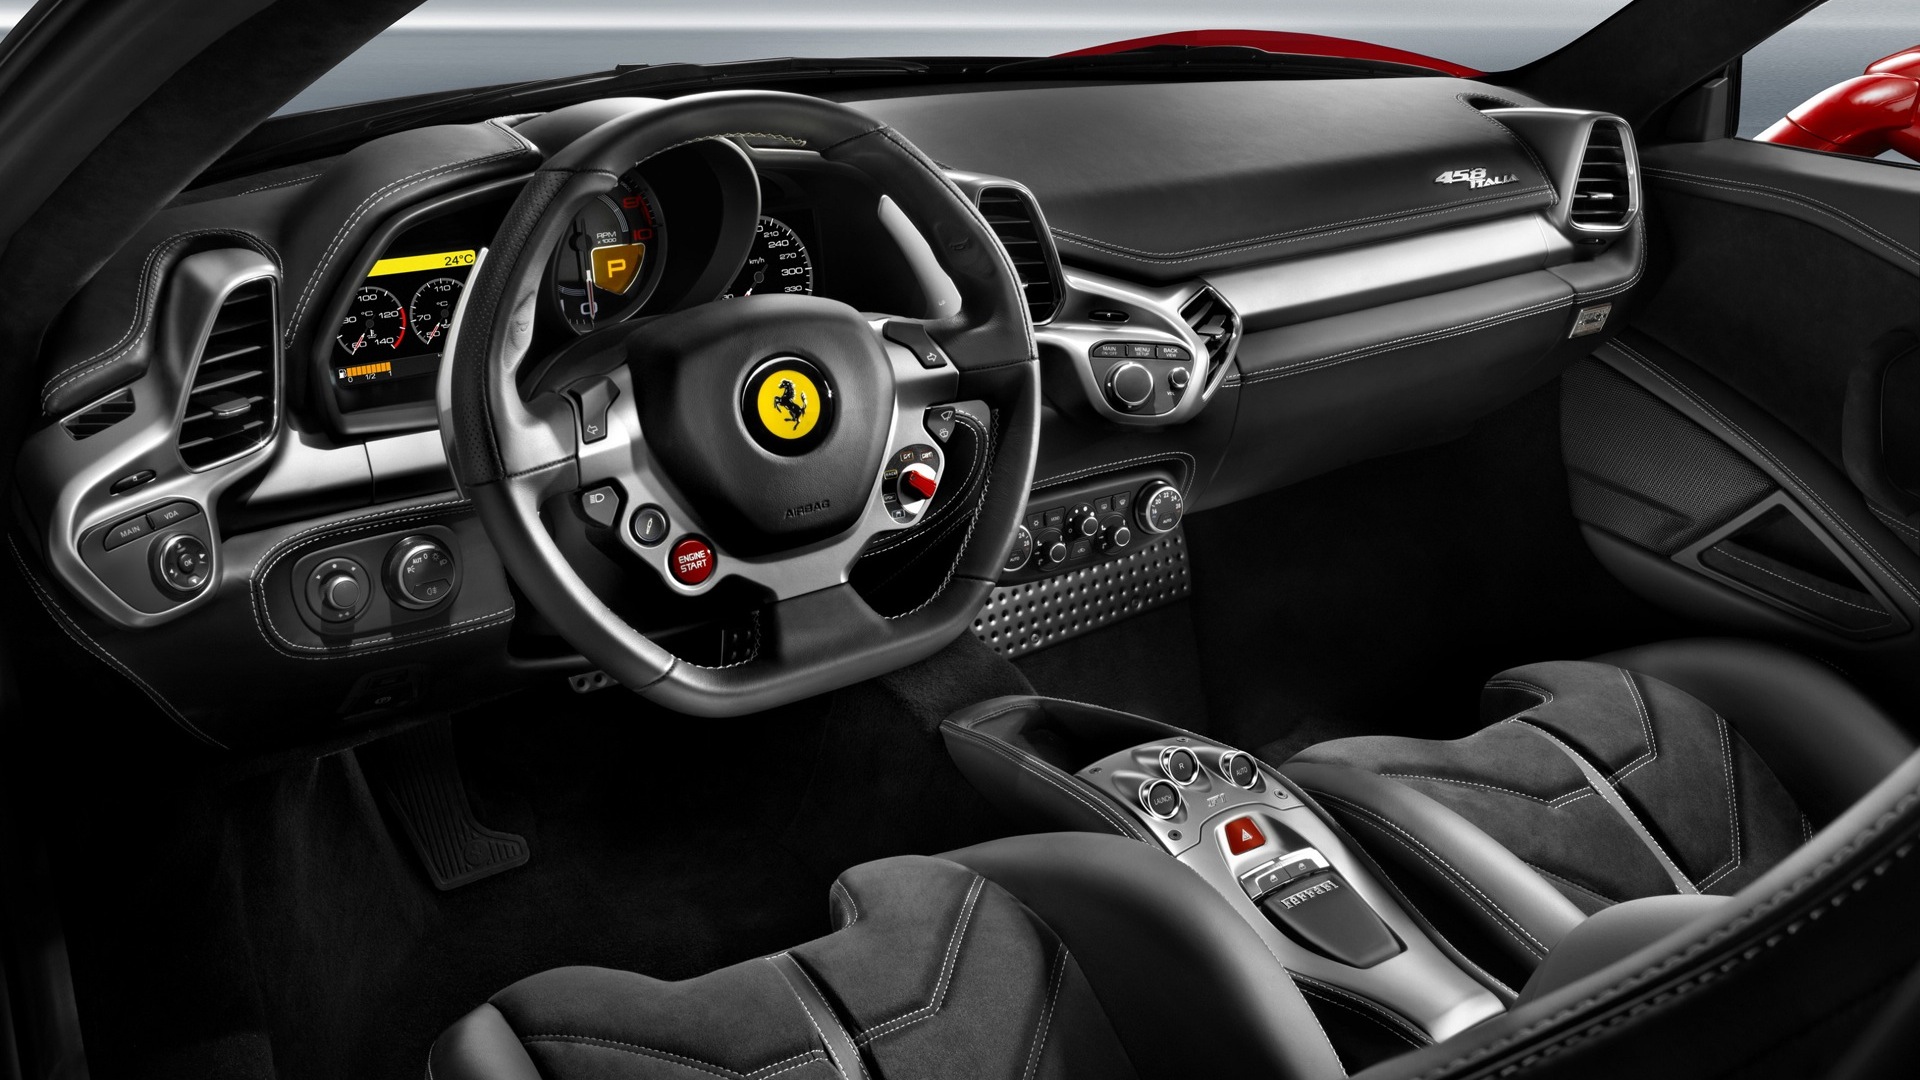 Ferrari 458 Italia 2013 Std Interior Car Photos Overdrive